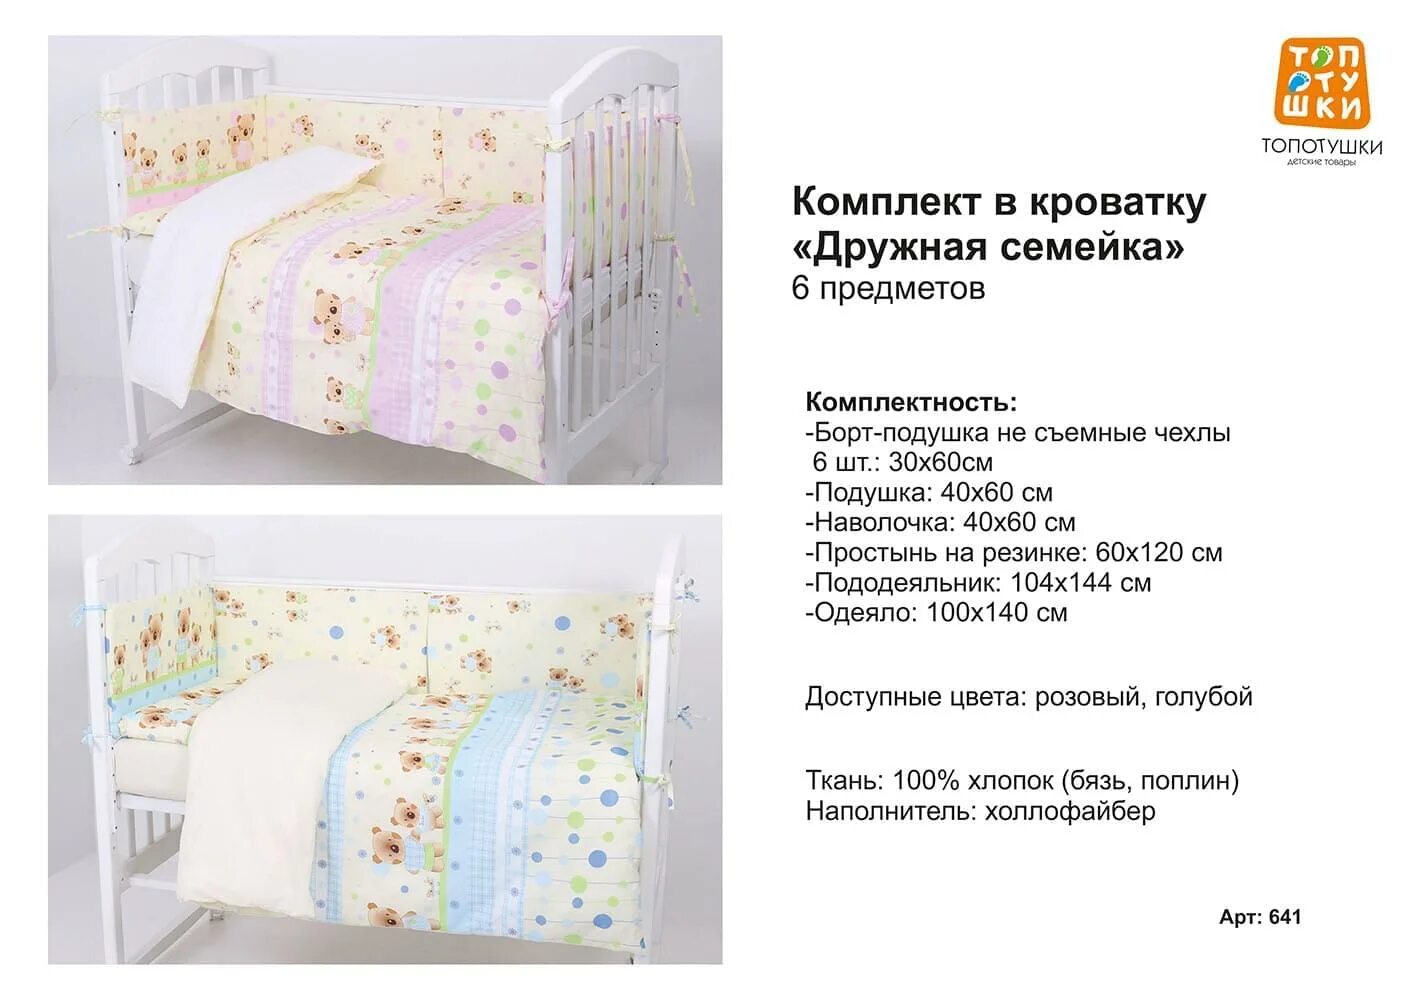 Размеры белья детской кроватки